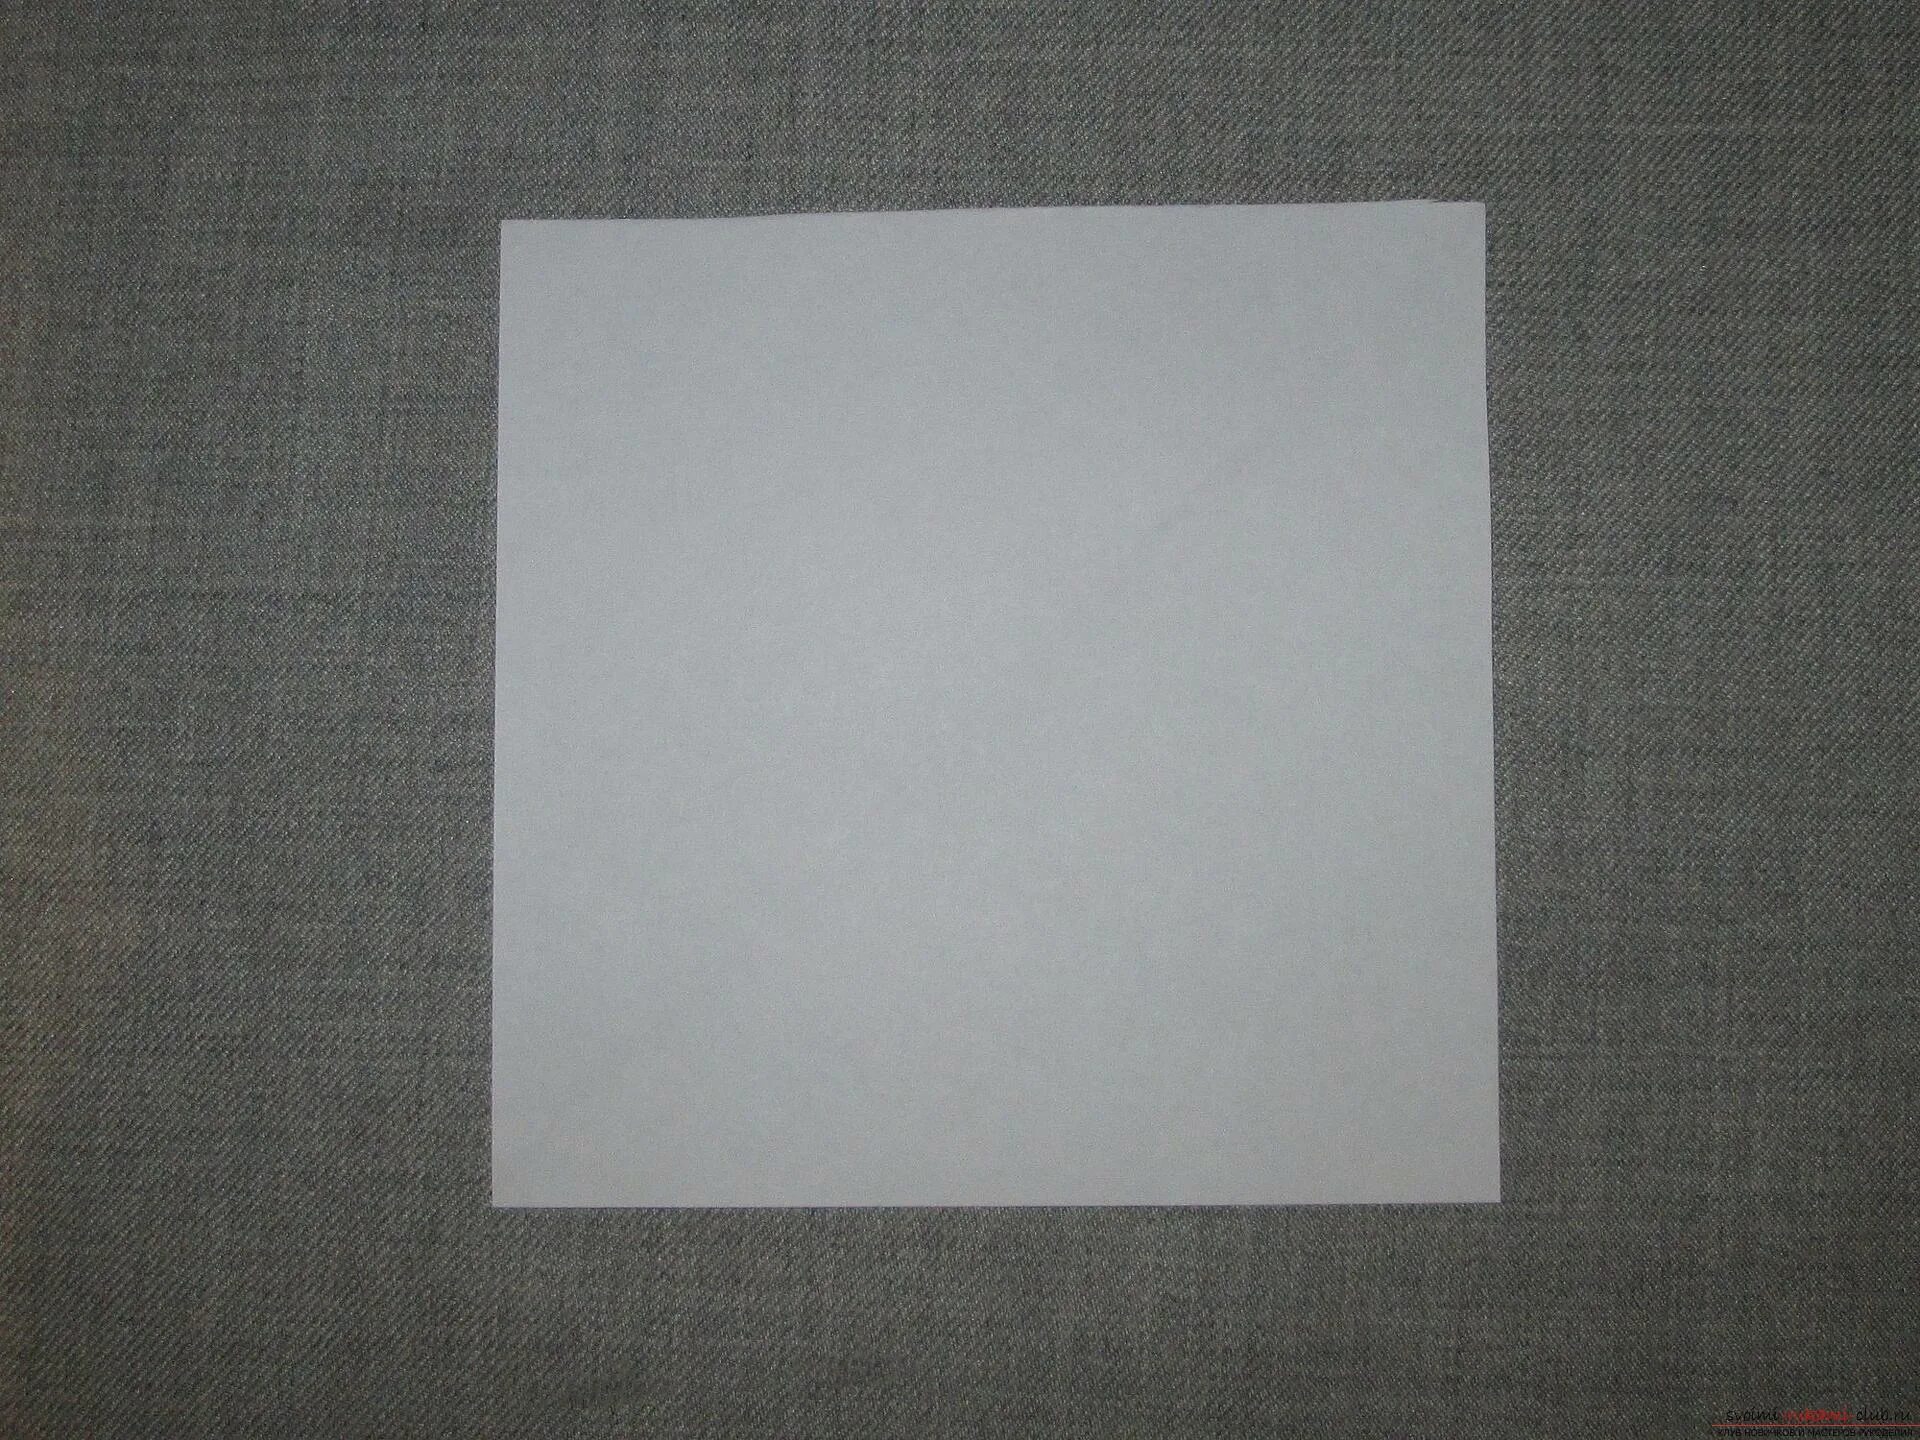 Квадратный лист бумаги со стороной 2. Квадратная бумага. Квадратный лист. Квадраттныйлист бумаги. Бумажный лист квадратный.